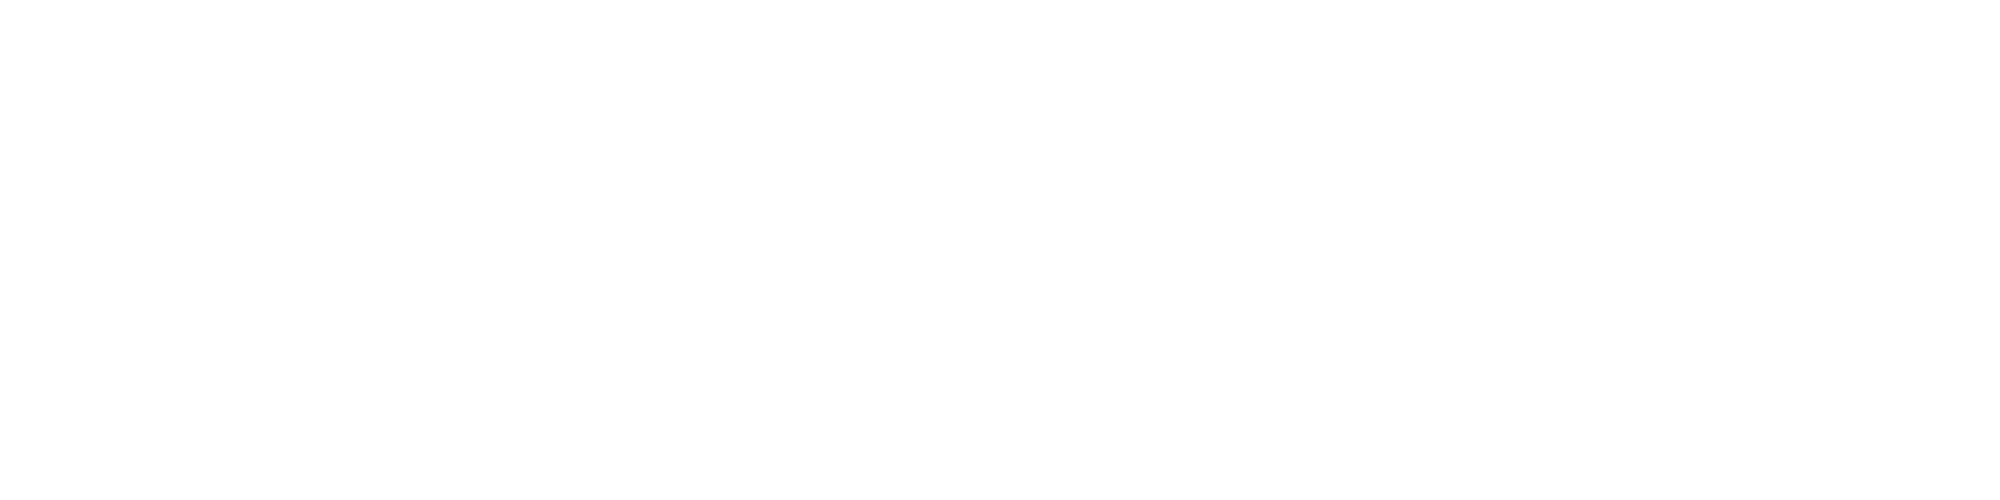 body image coaching roadmap 3